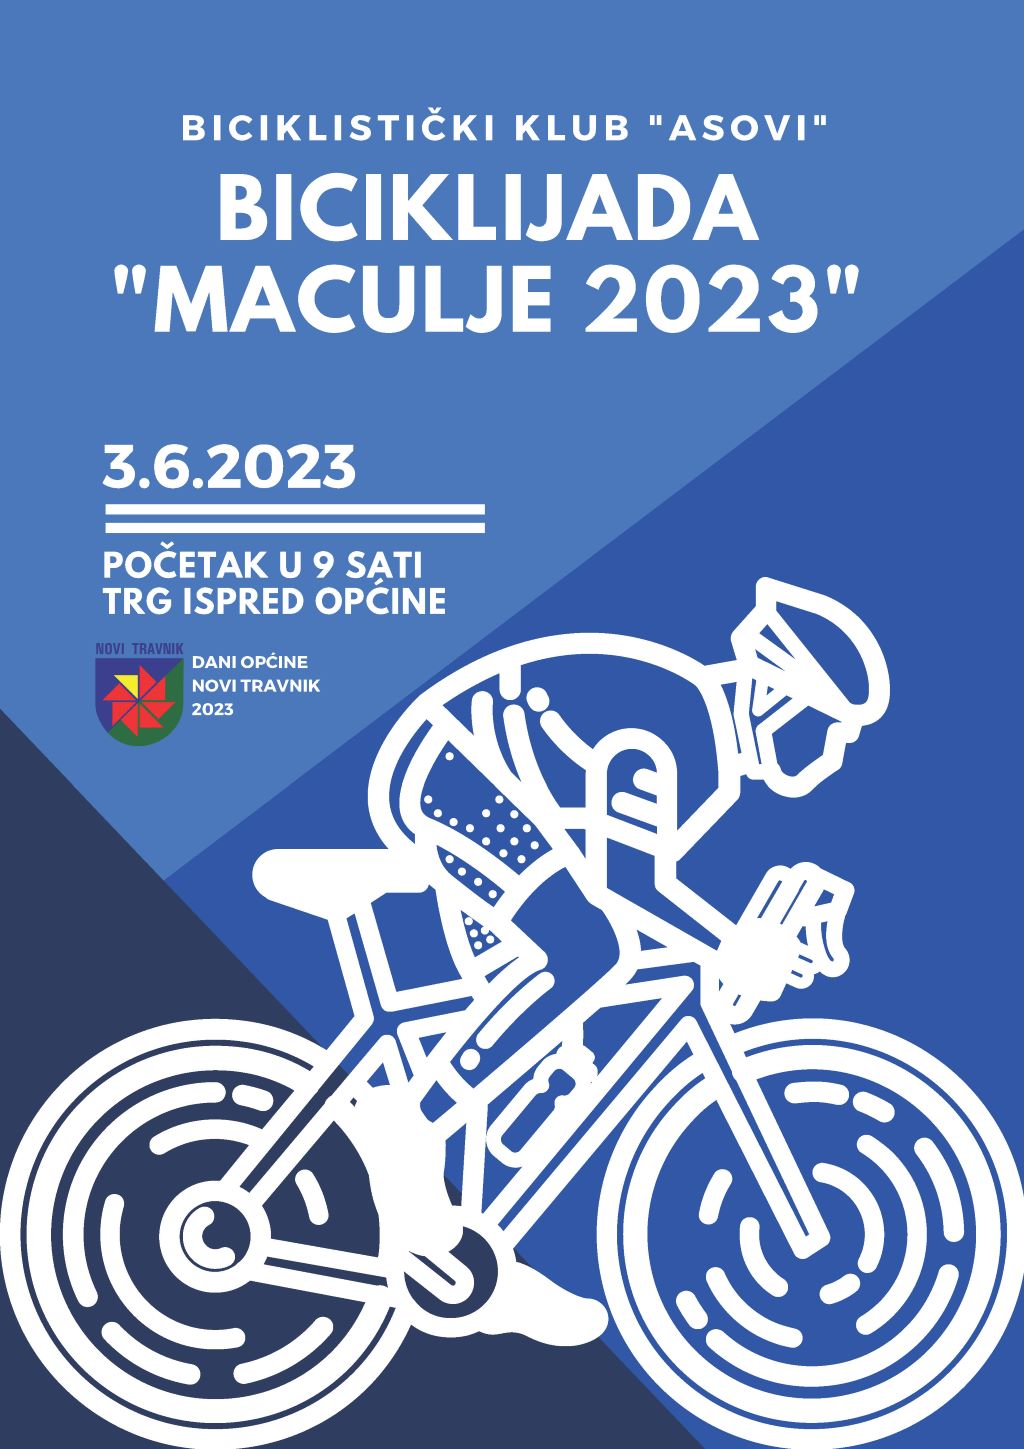 Biciklijada maculje 2023 za web